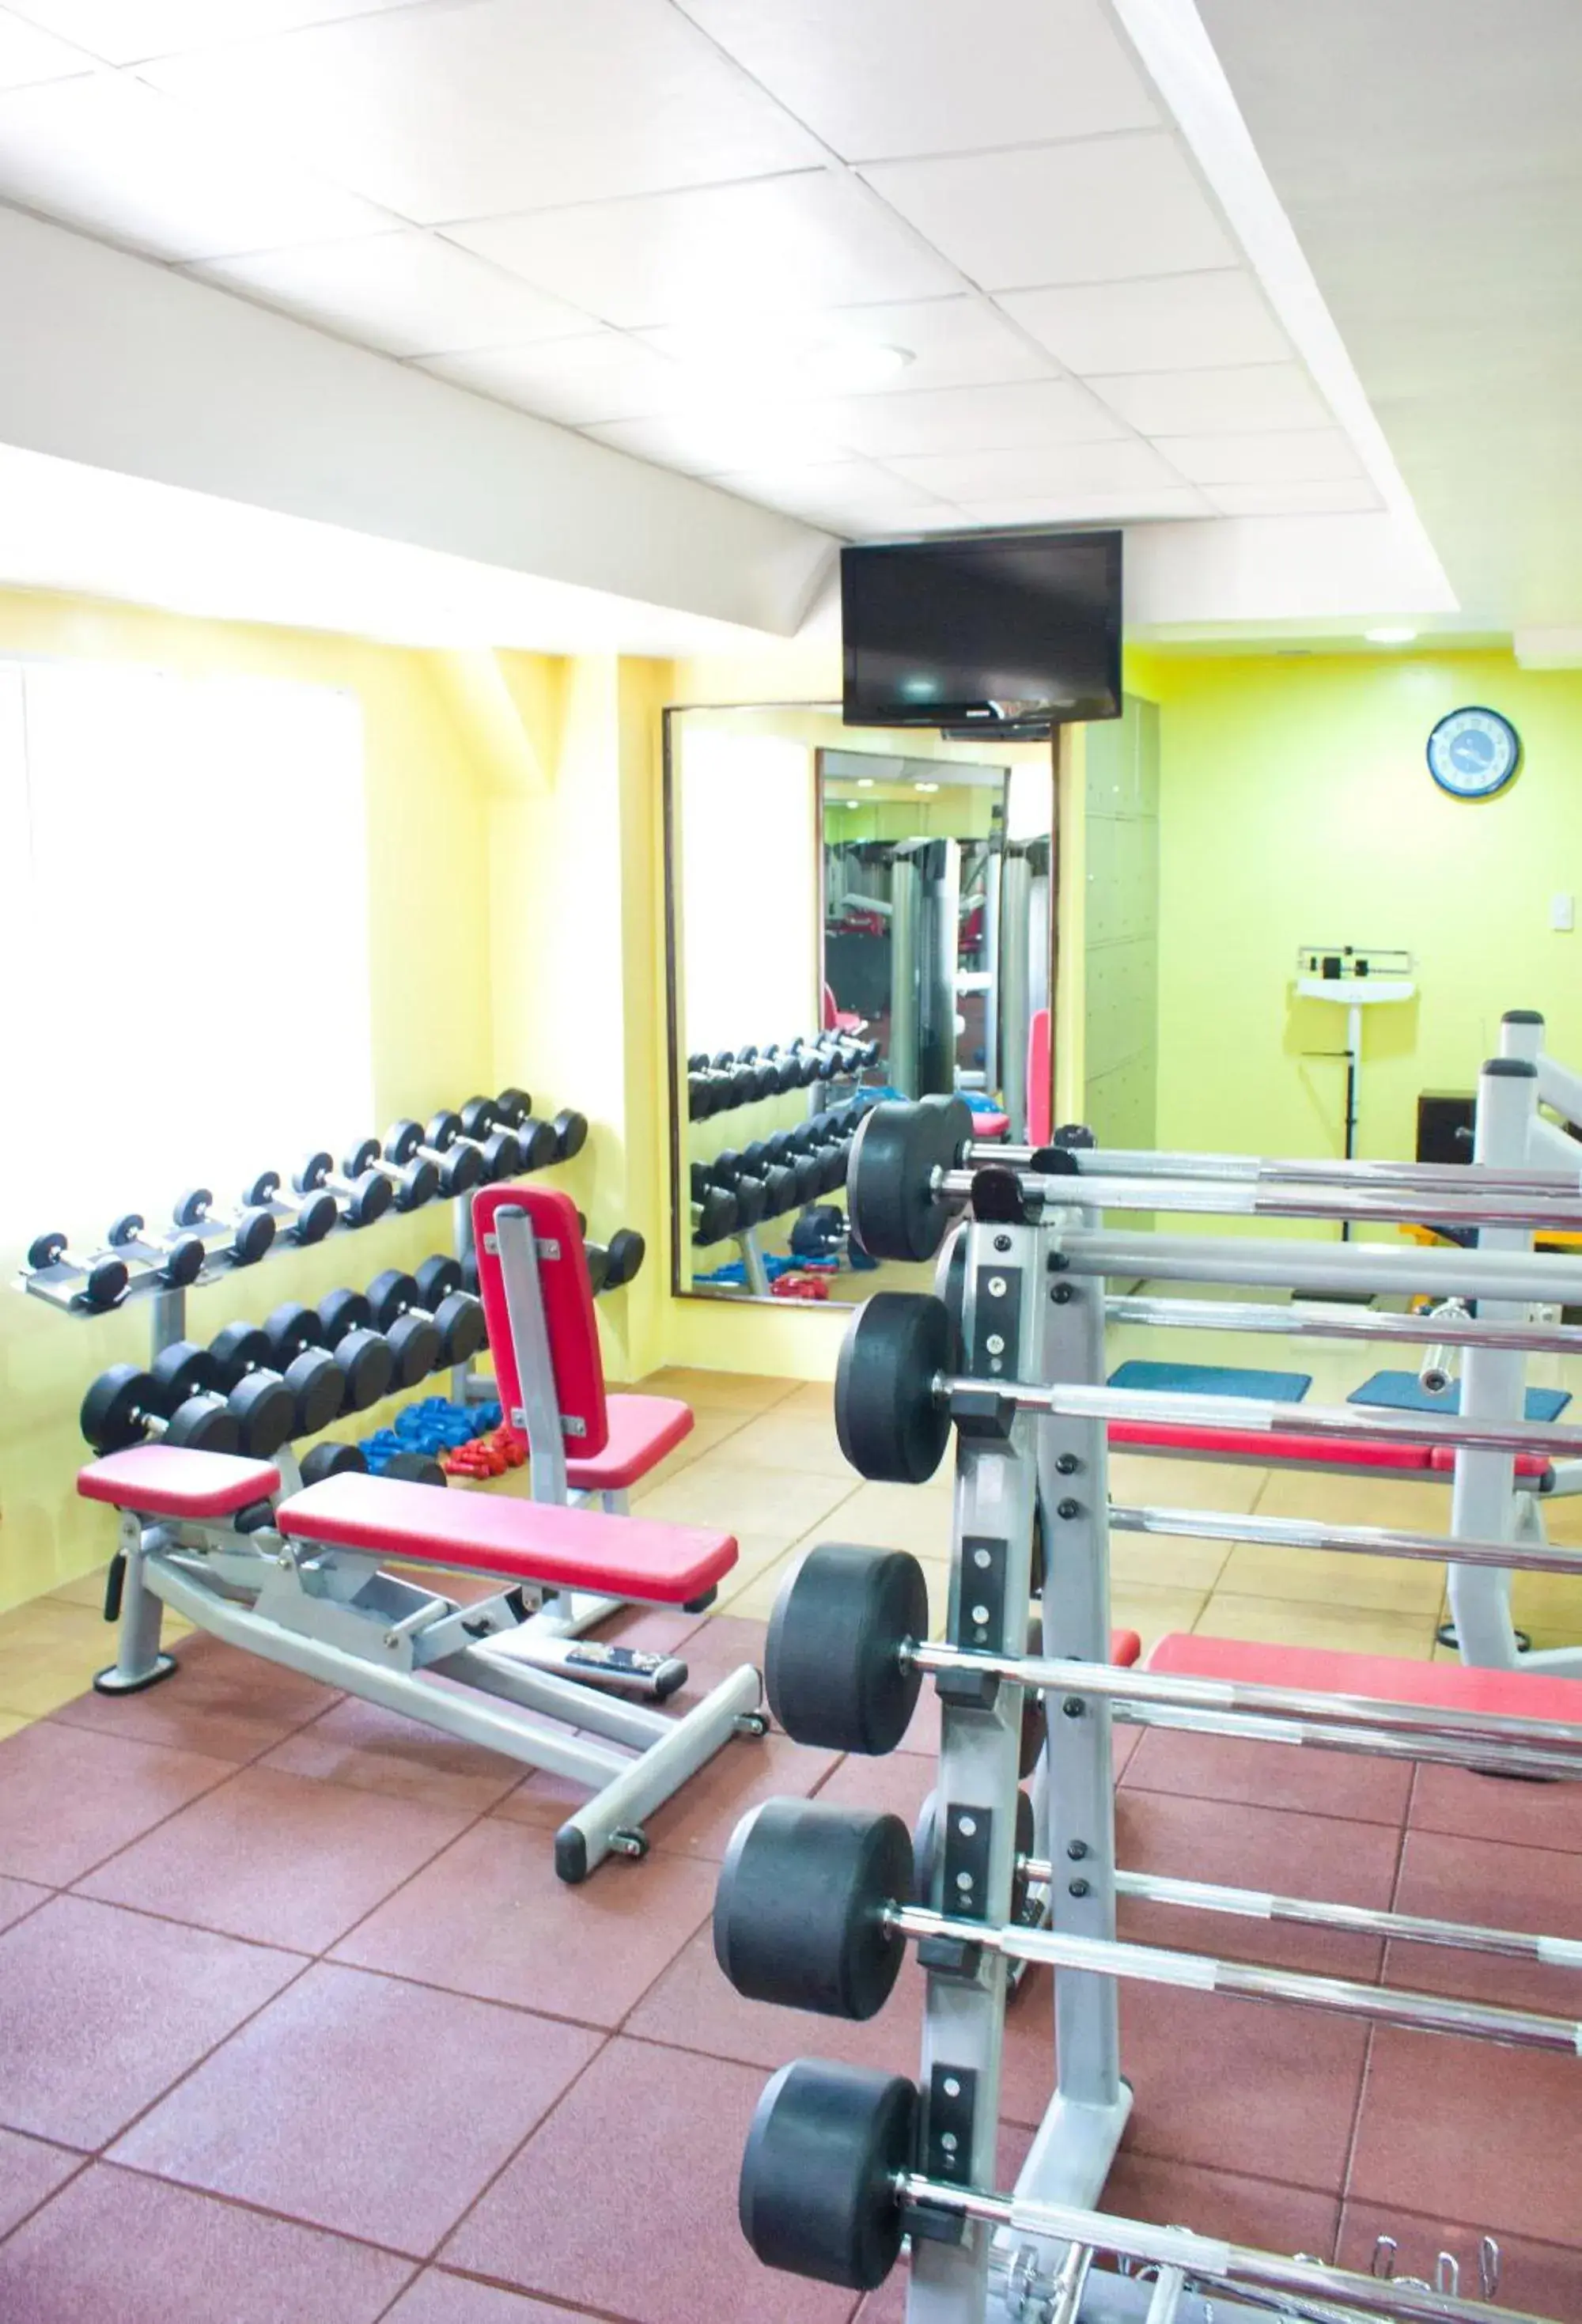 Fitness centre/facilities, Fitness Center/Facilities in Allson's Inn